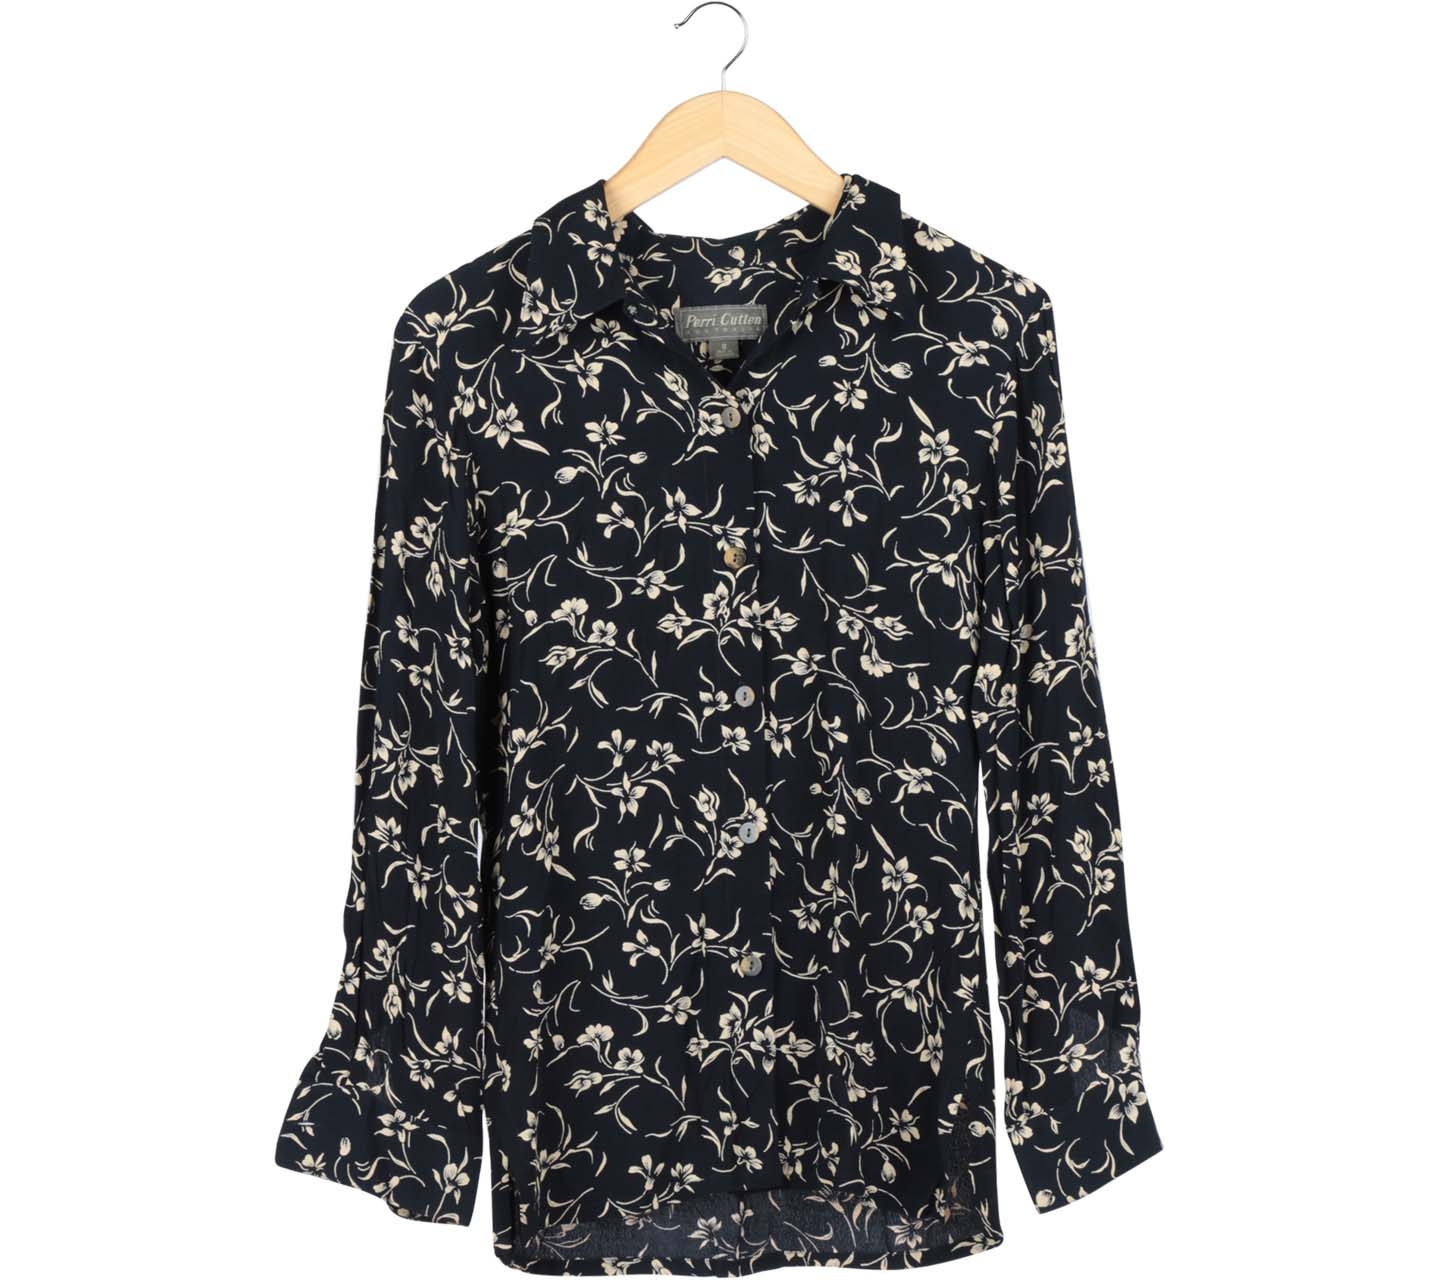 Perri Cutten Black And Cream Floral Shirt